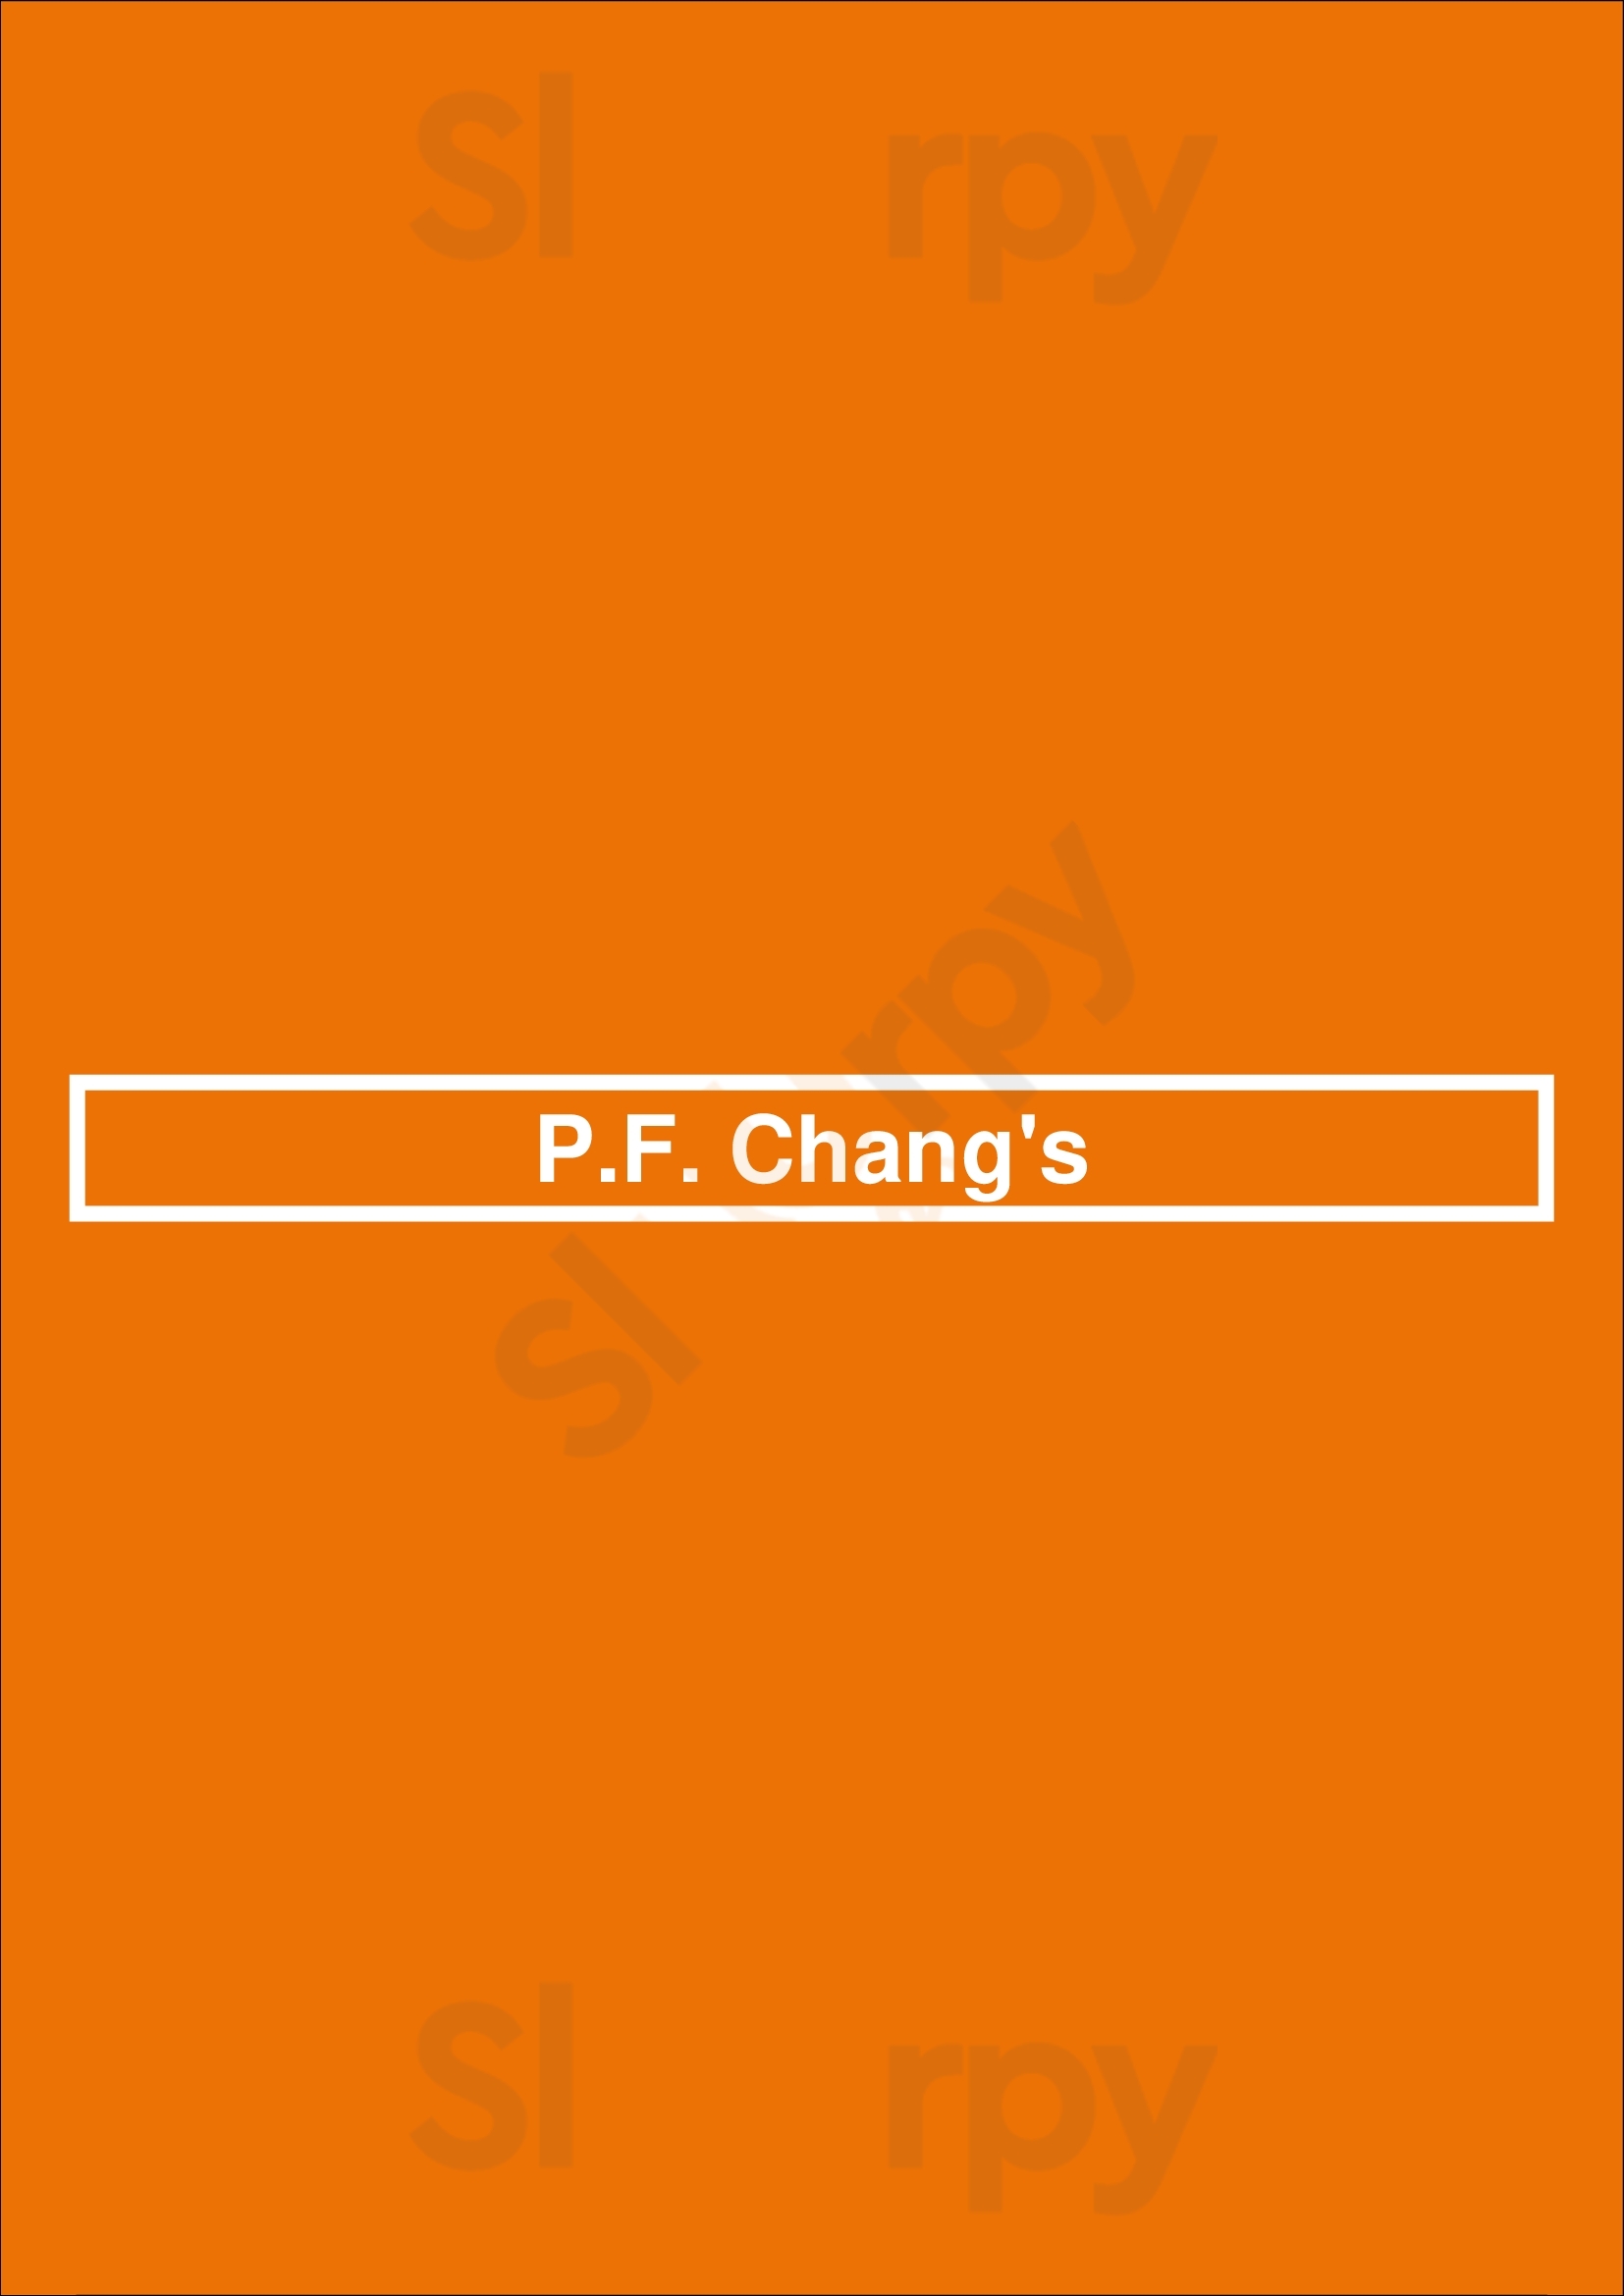 P.f. Chang's Pasadena Menu - 1